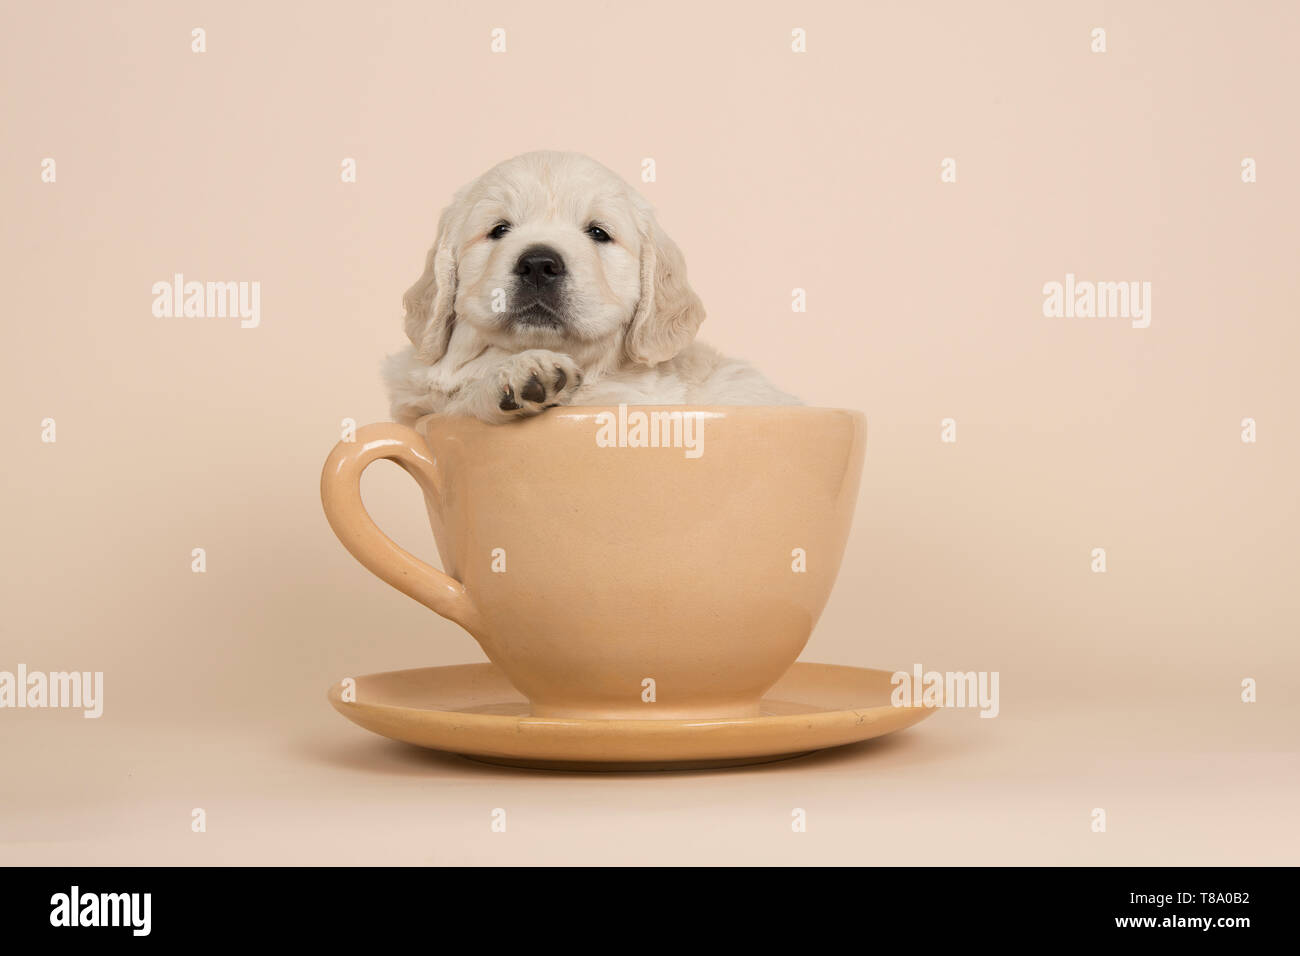 cute puppy in a cup